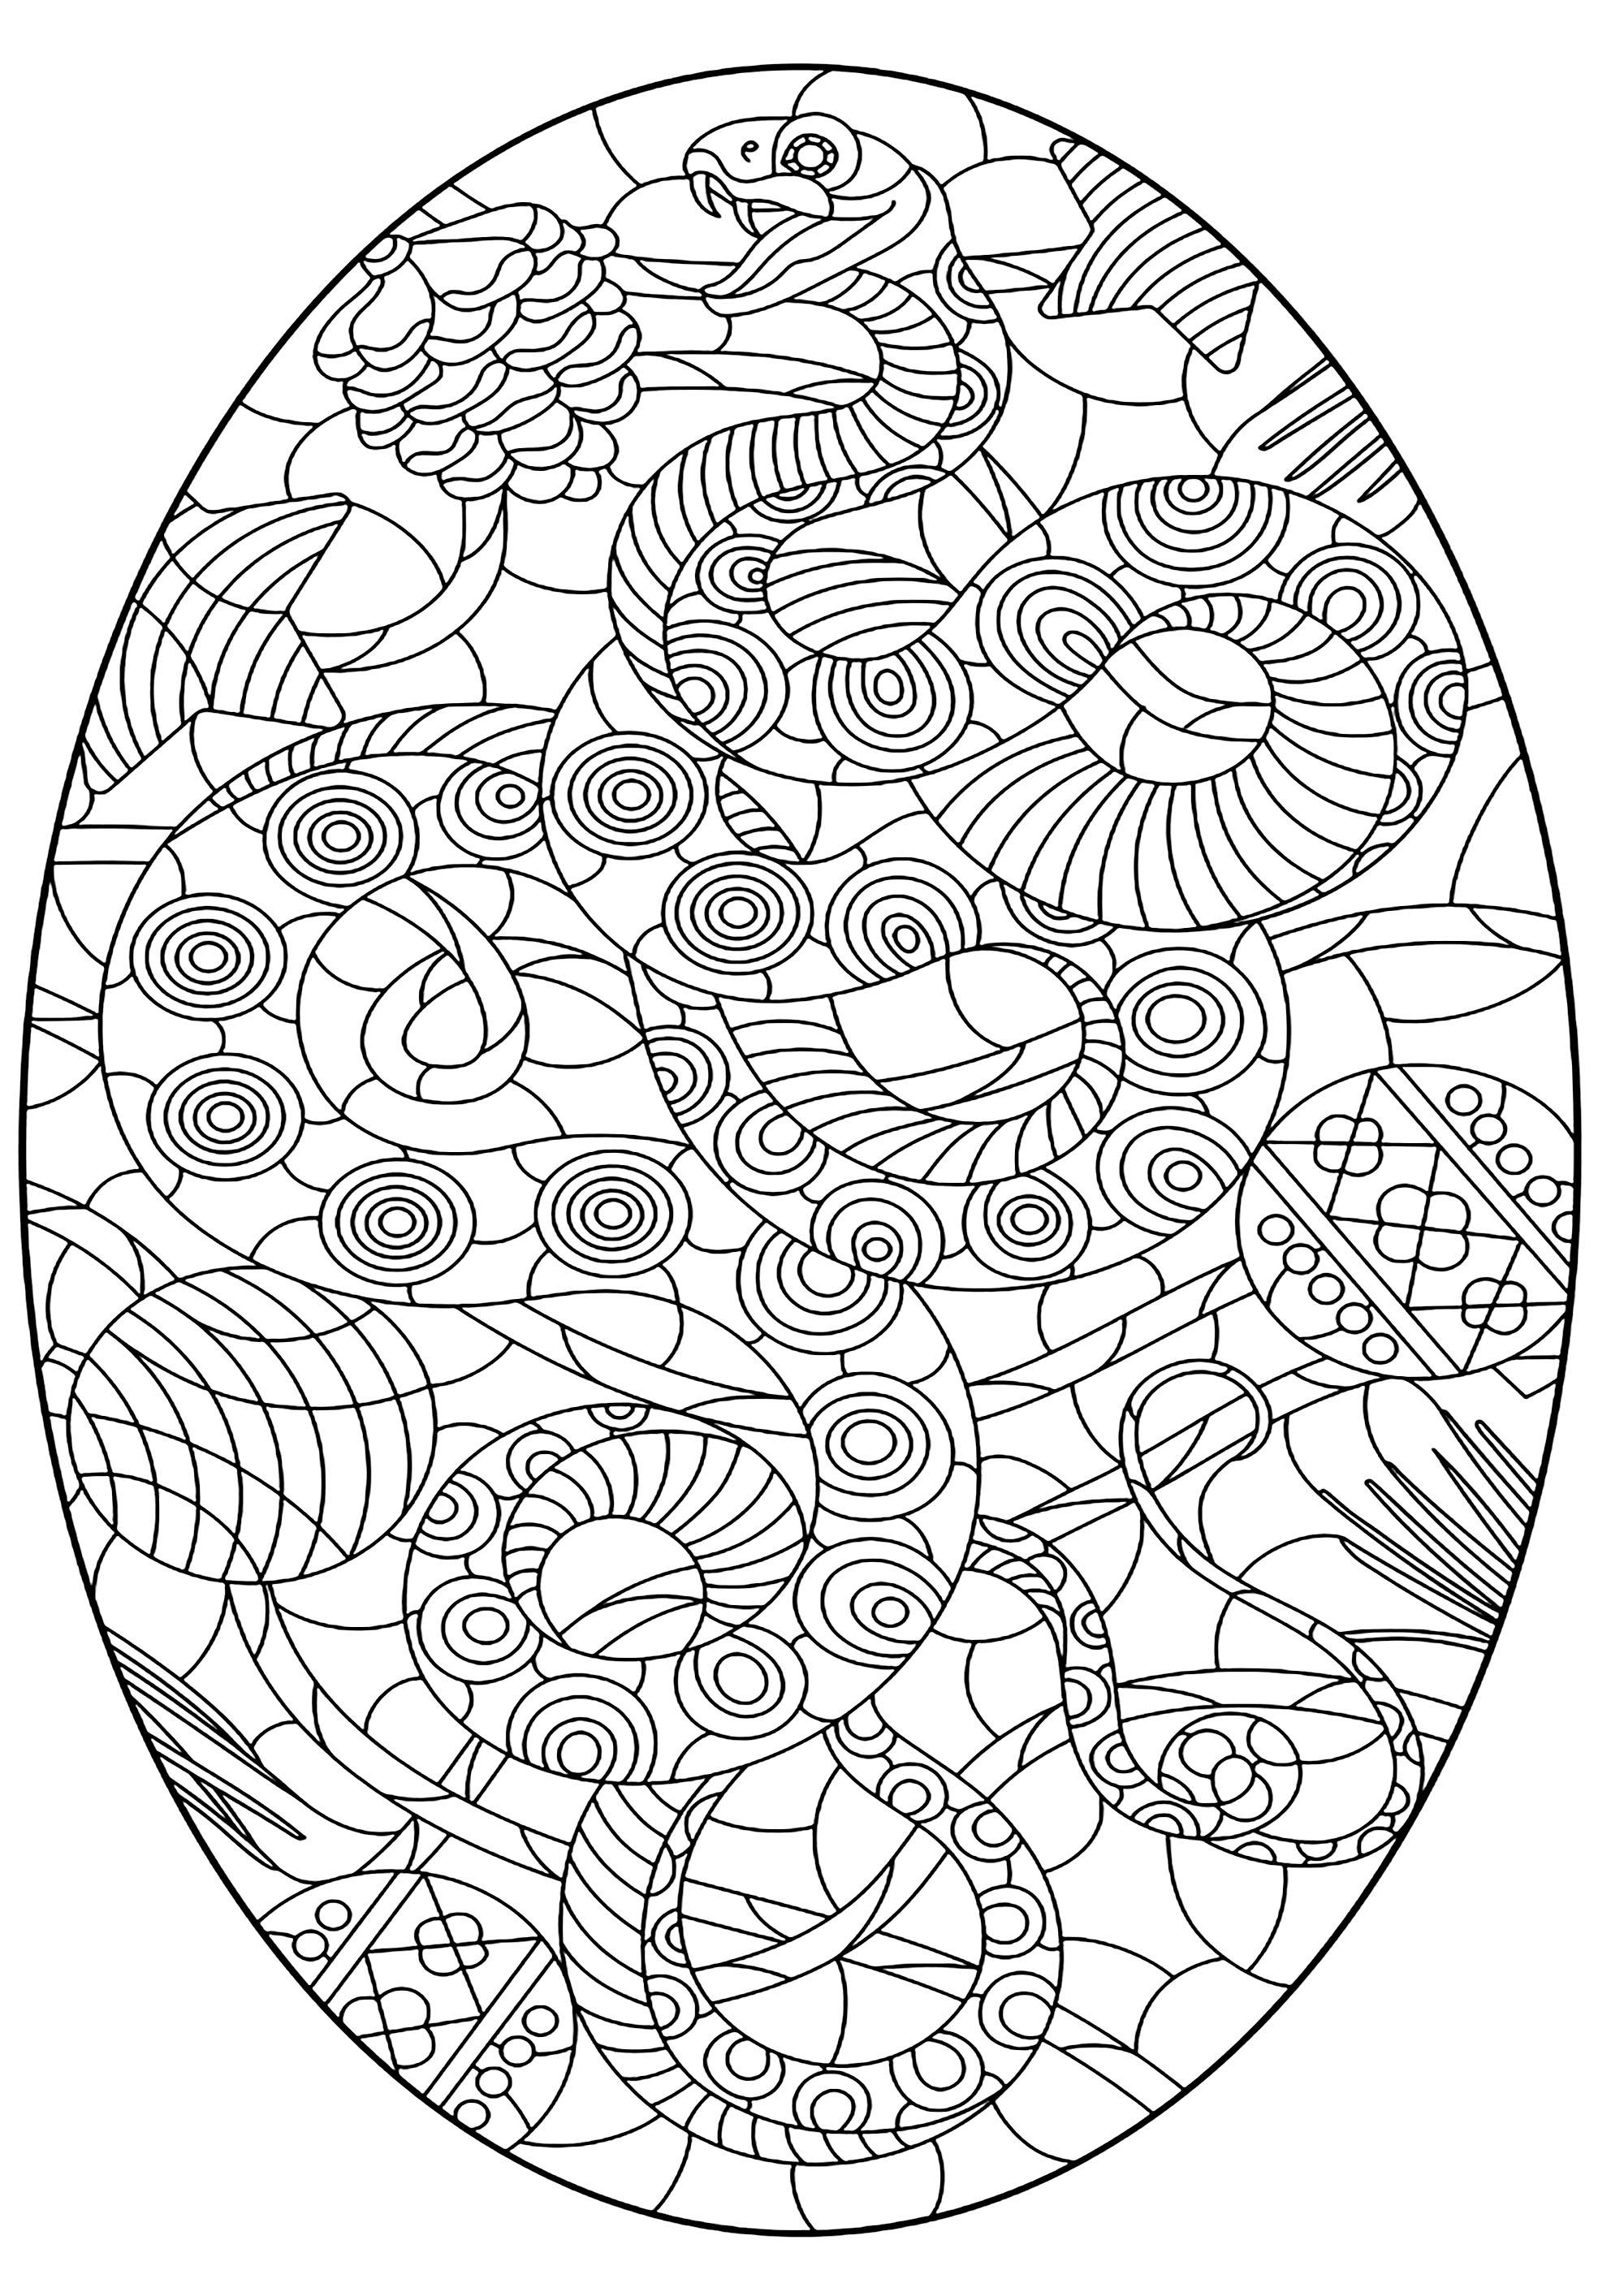 Serpent dans un ovale, avec nombreux motifs. Le serpent et les motifs sont harmonieux et se confondent, Source : 123rf   Artiste : zagory